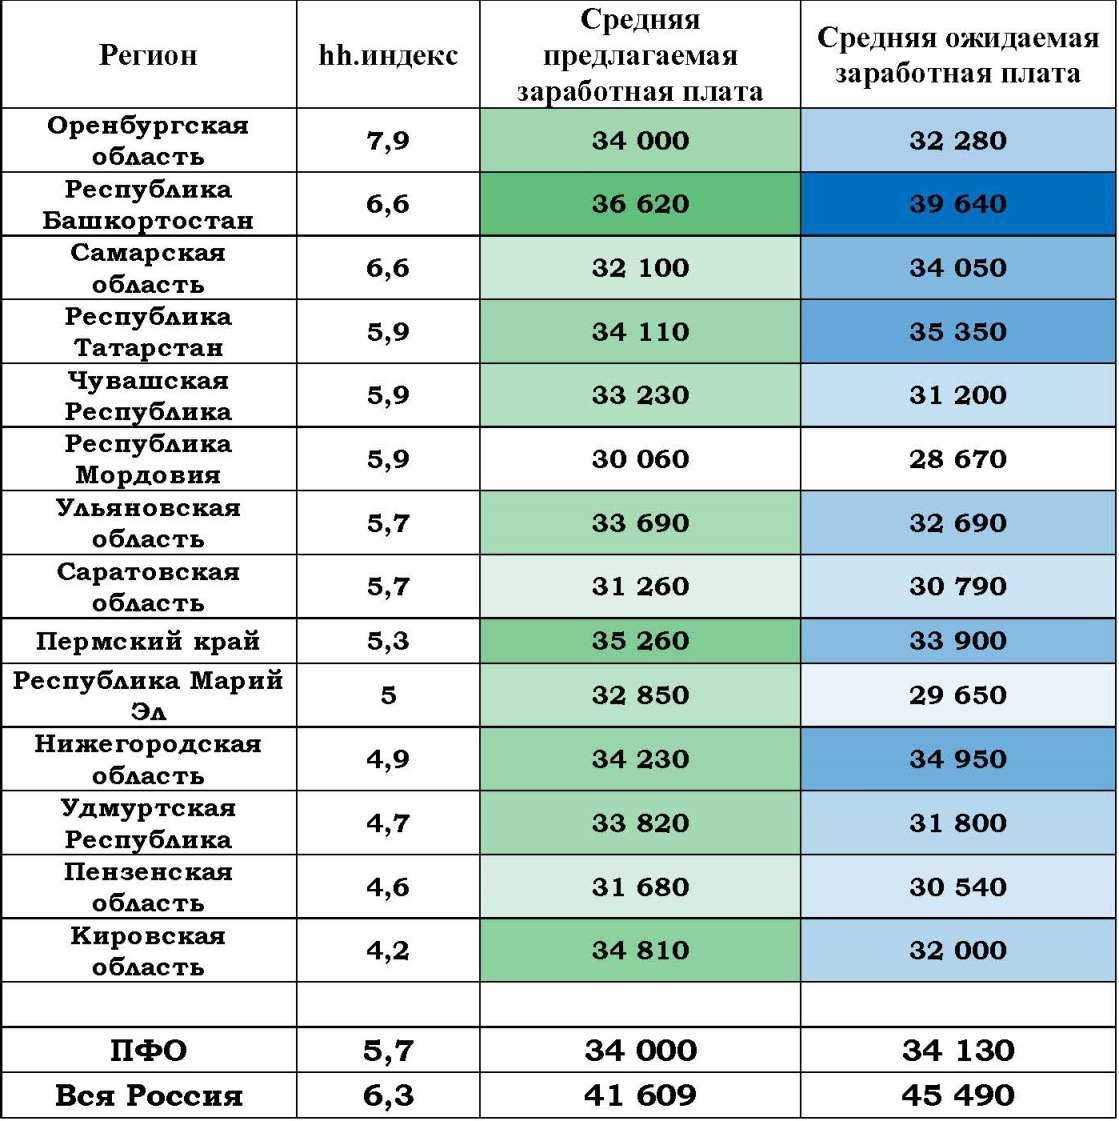 Работа в риге для русских, украинцев и белорусов в 2021 году